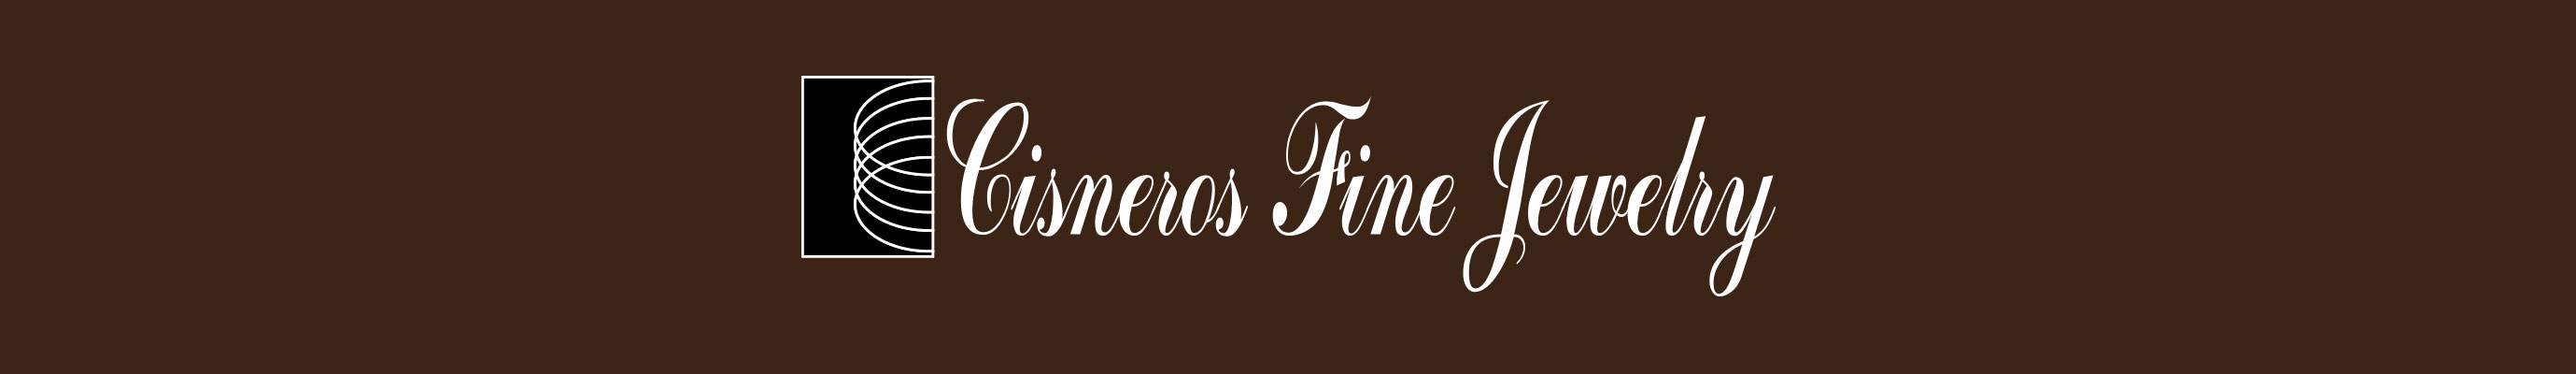 Cisneros Fine Jewelry Logo